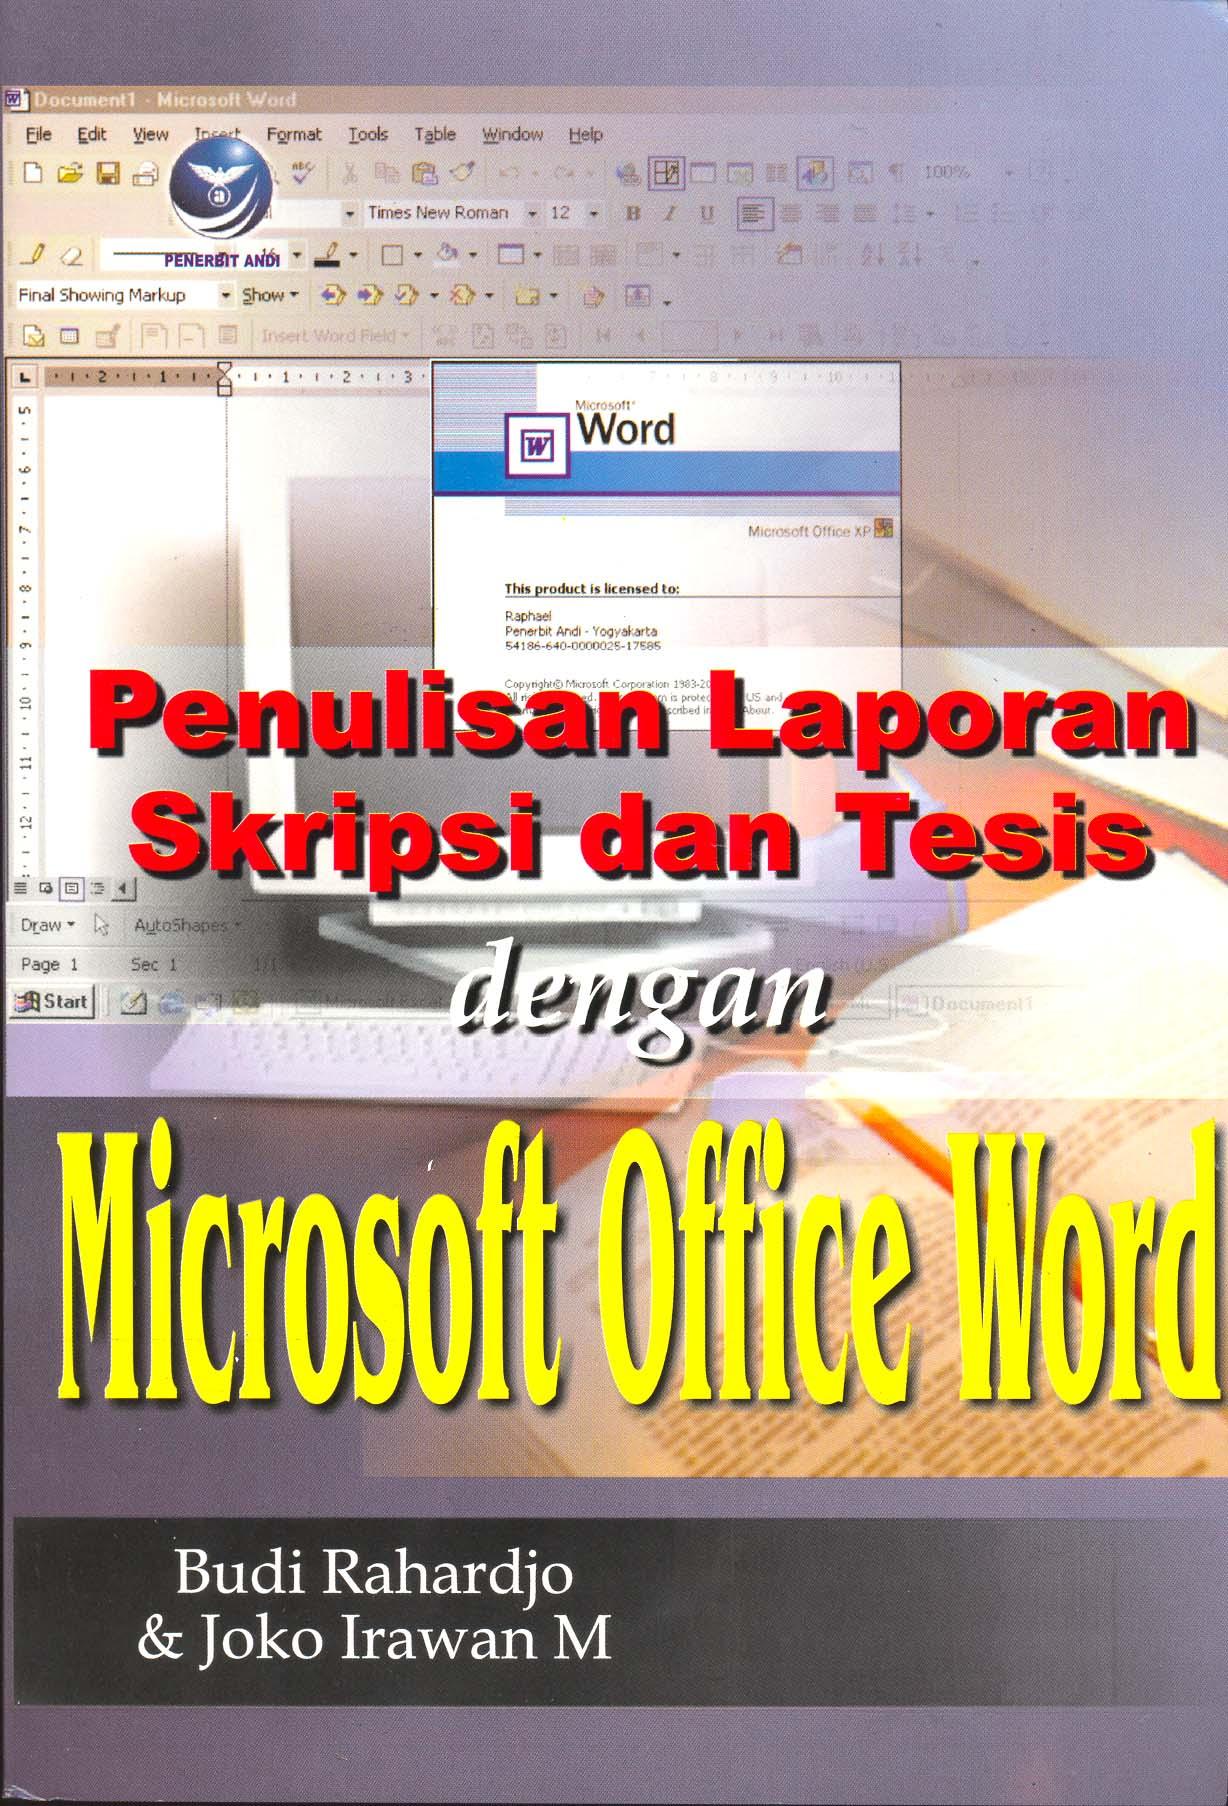 Penulisan Laporan Skripsi dan Tesis dengan Microsoft Office Word